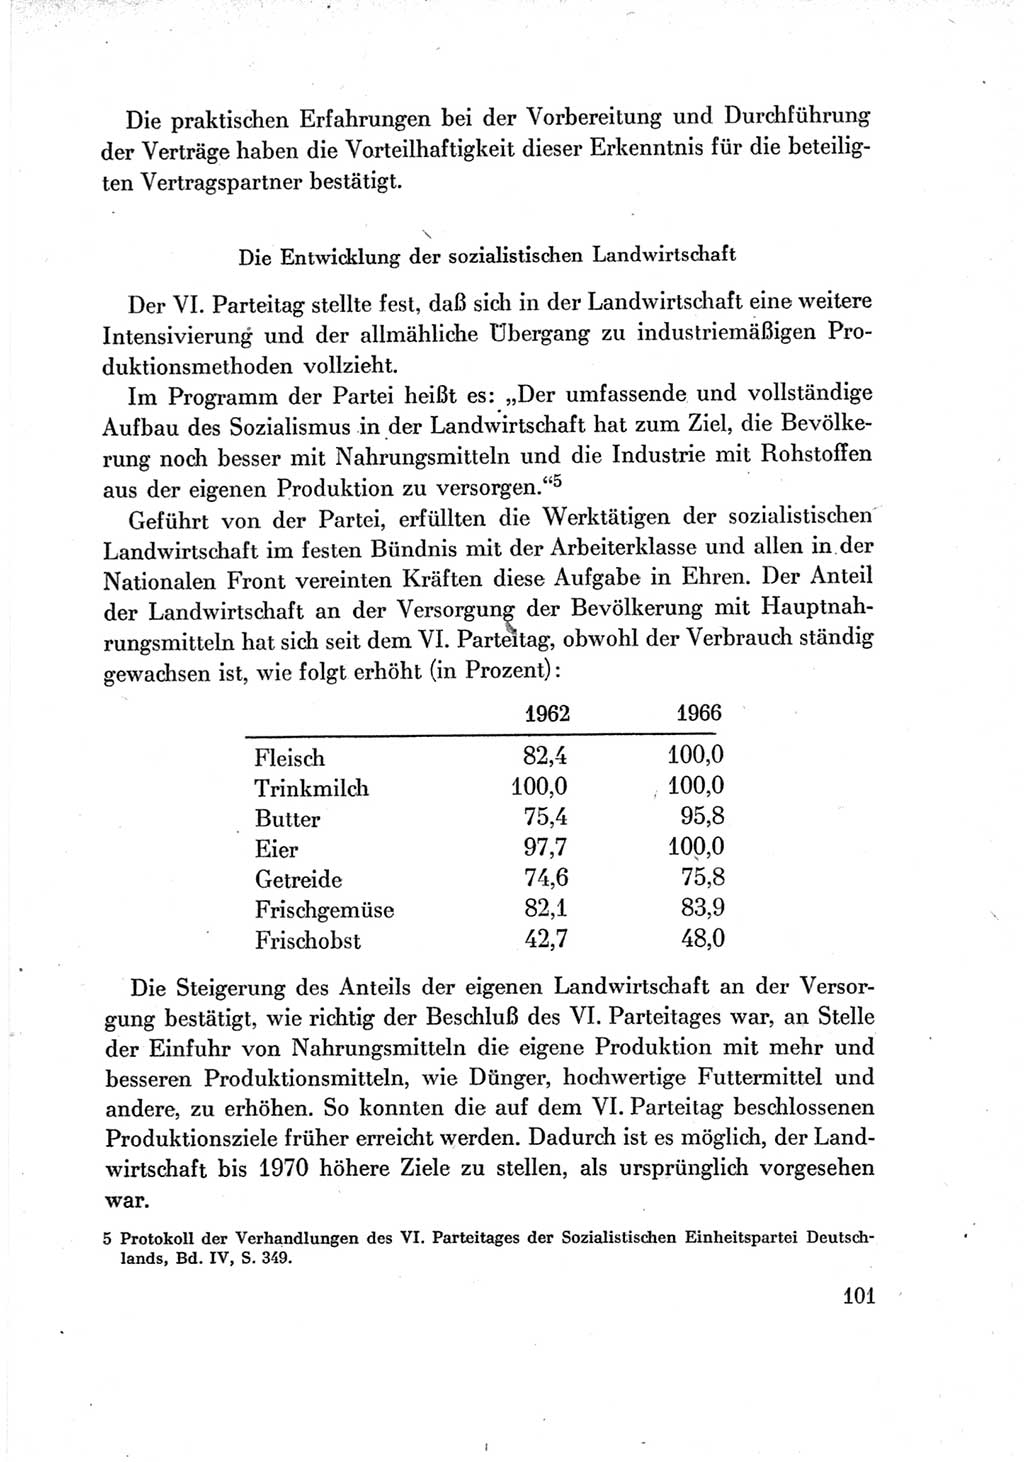 Protokoll der Verhandlungen des Ⅶ. Parteitages der Sozialistischen Einheitspartei Deutschlands (SED) [Deutsche Demokratische Republik (DDR)] 1967, Band Ⅳ, Seite 101 (Prot. Verh. Ⅶ. PT SED DDR 1967, Bd. Ⅳ, S. 101)